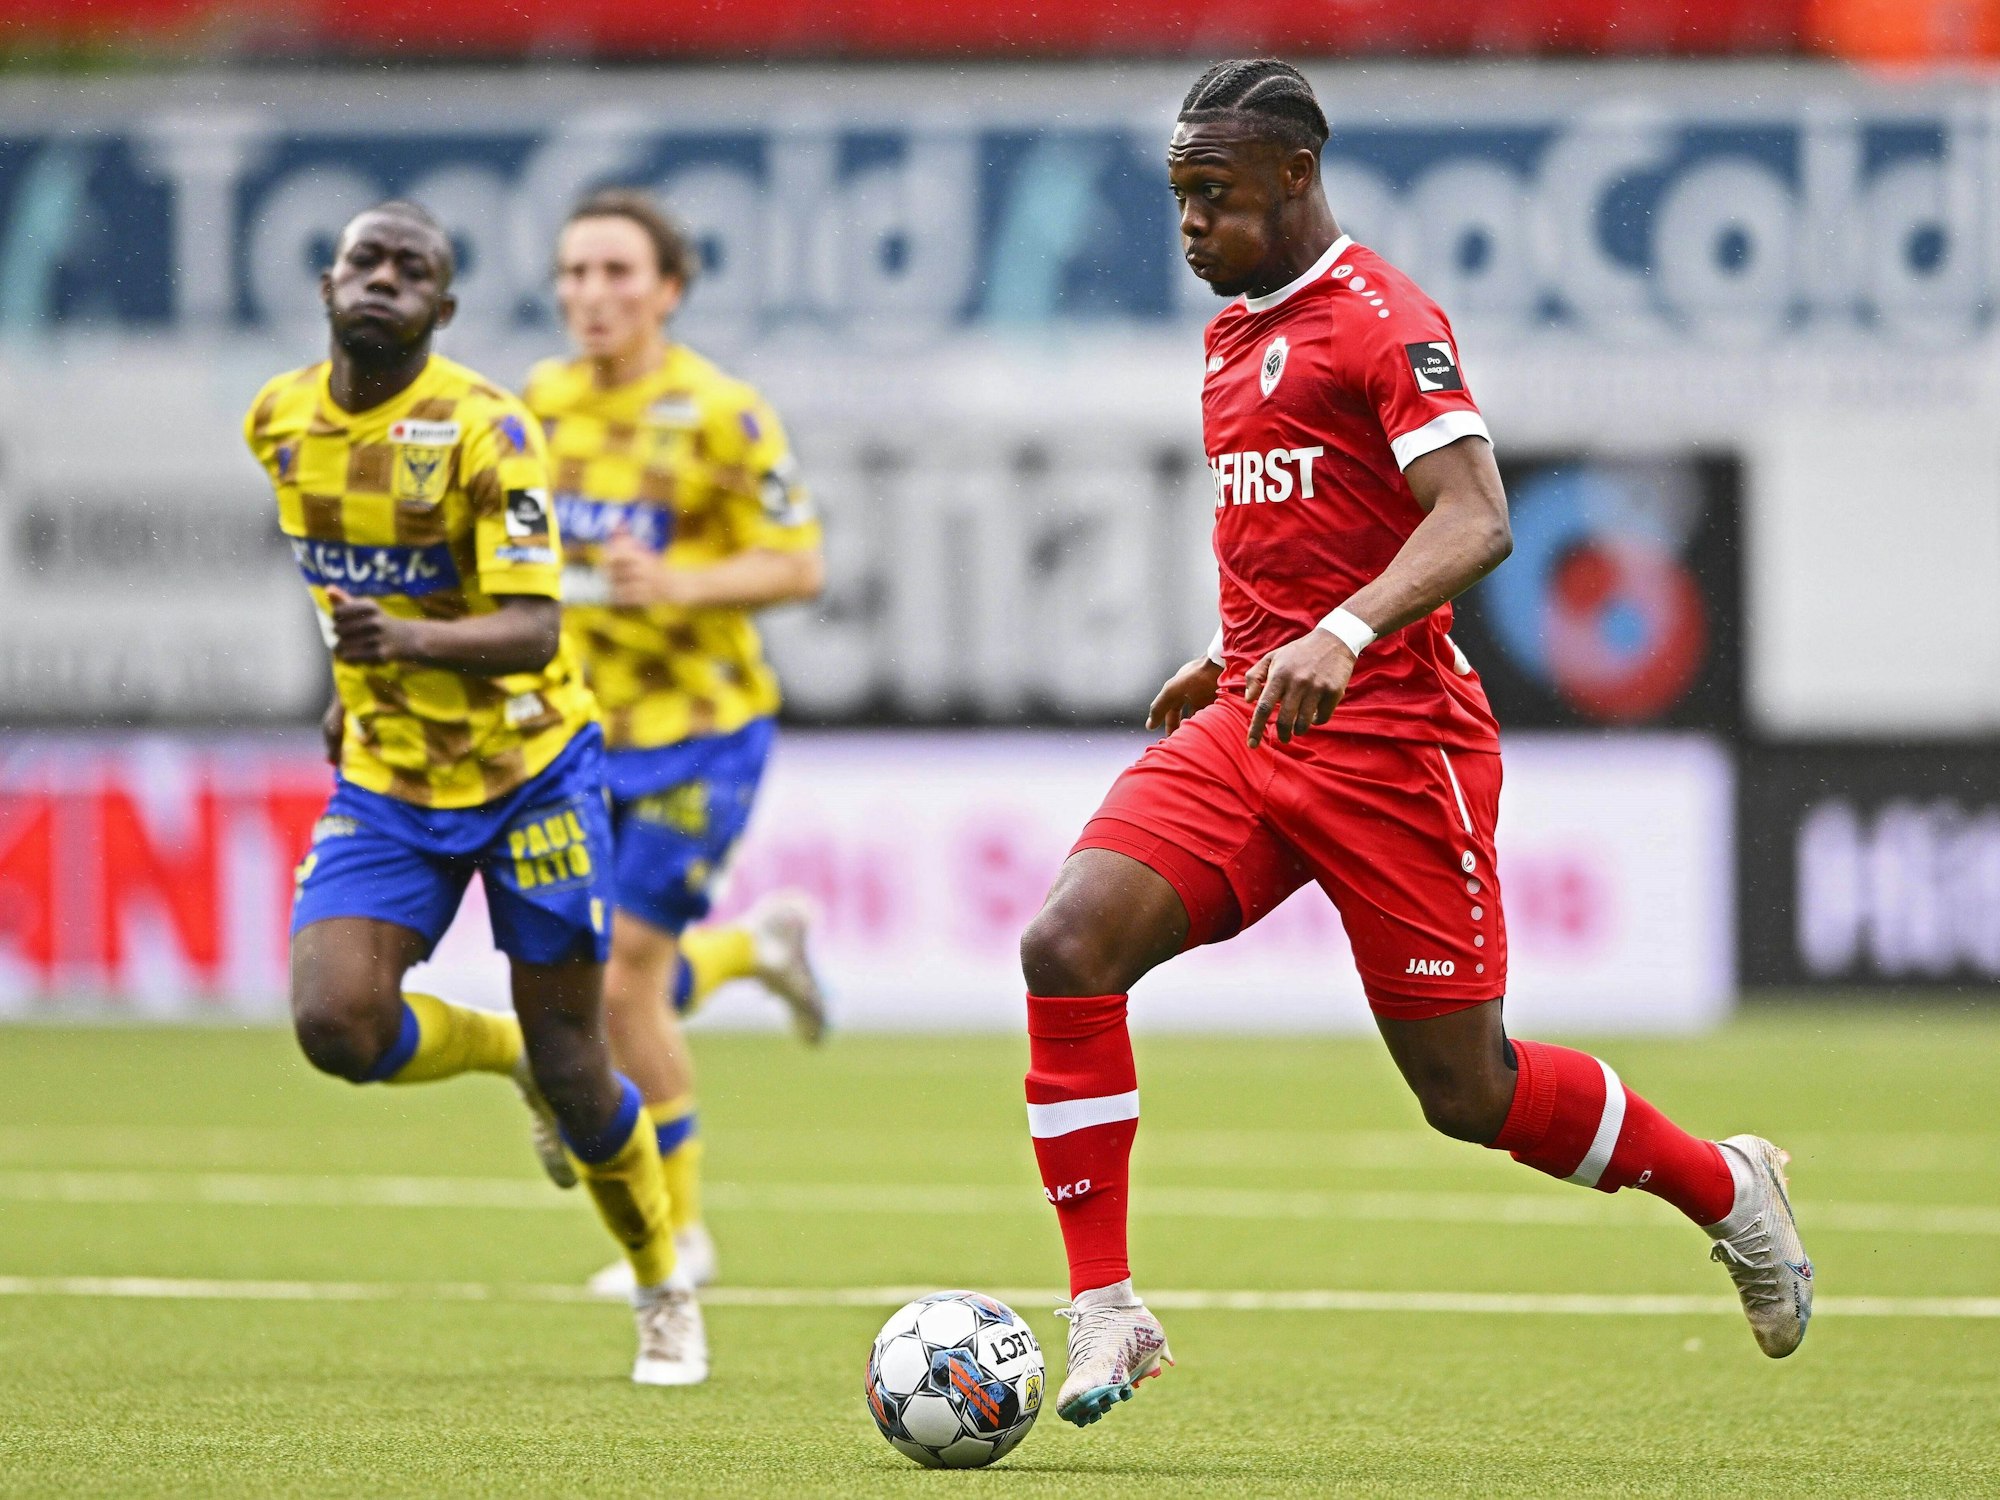 Antwerpens Christopher Scott führt den Ball im Spiel gegen VV St. Truiden.